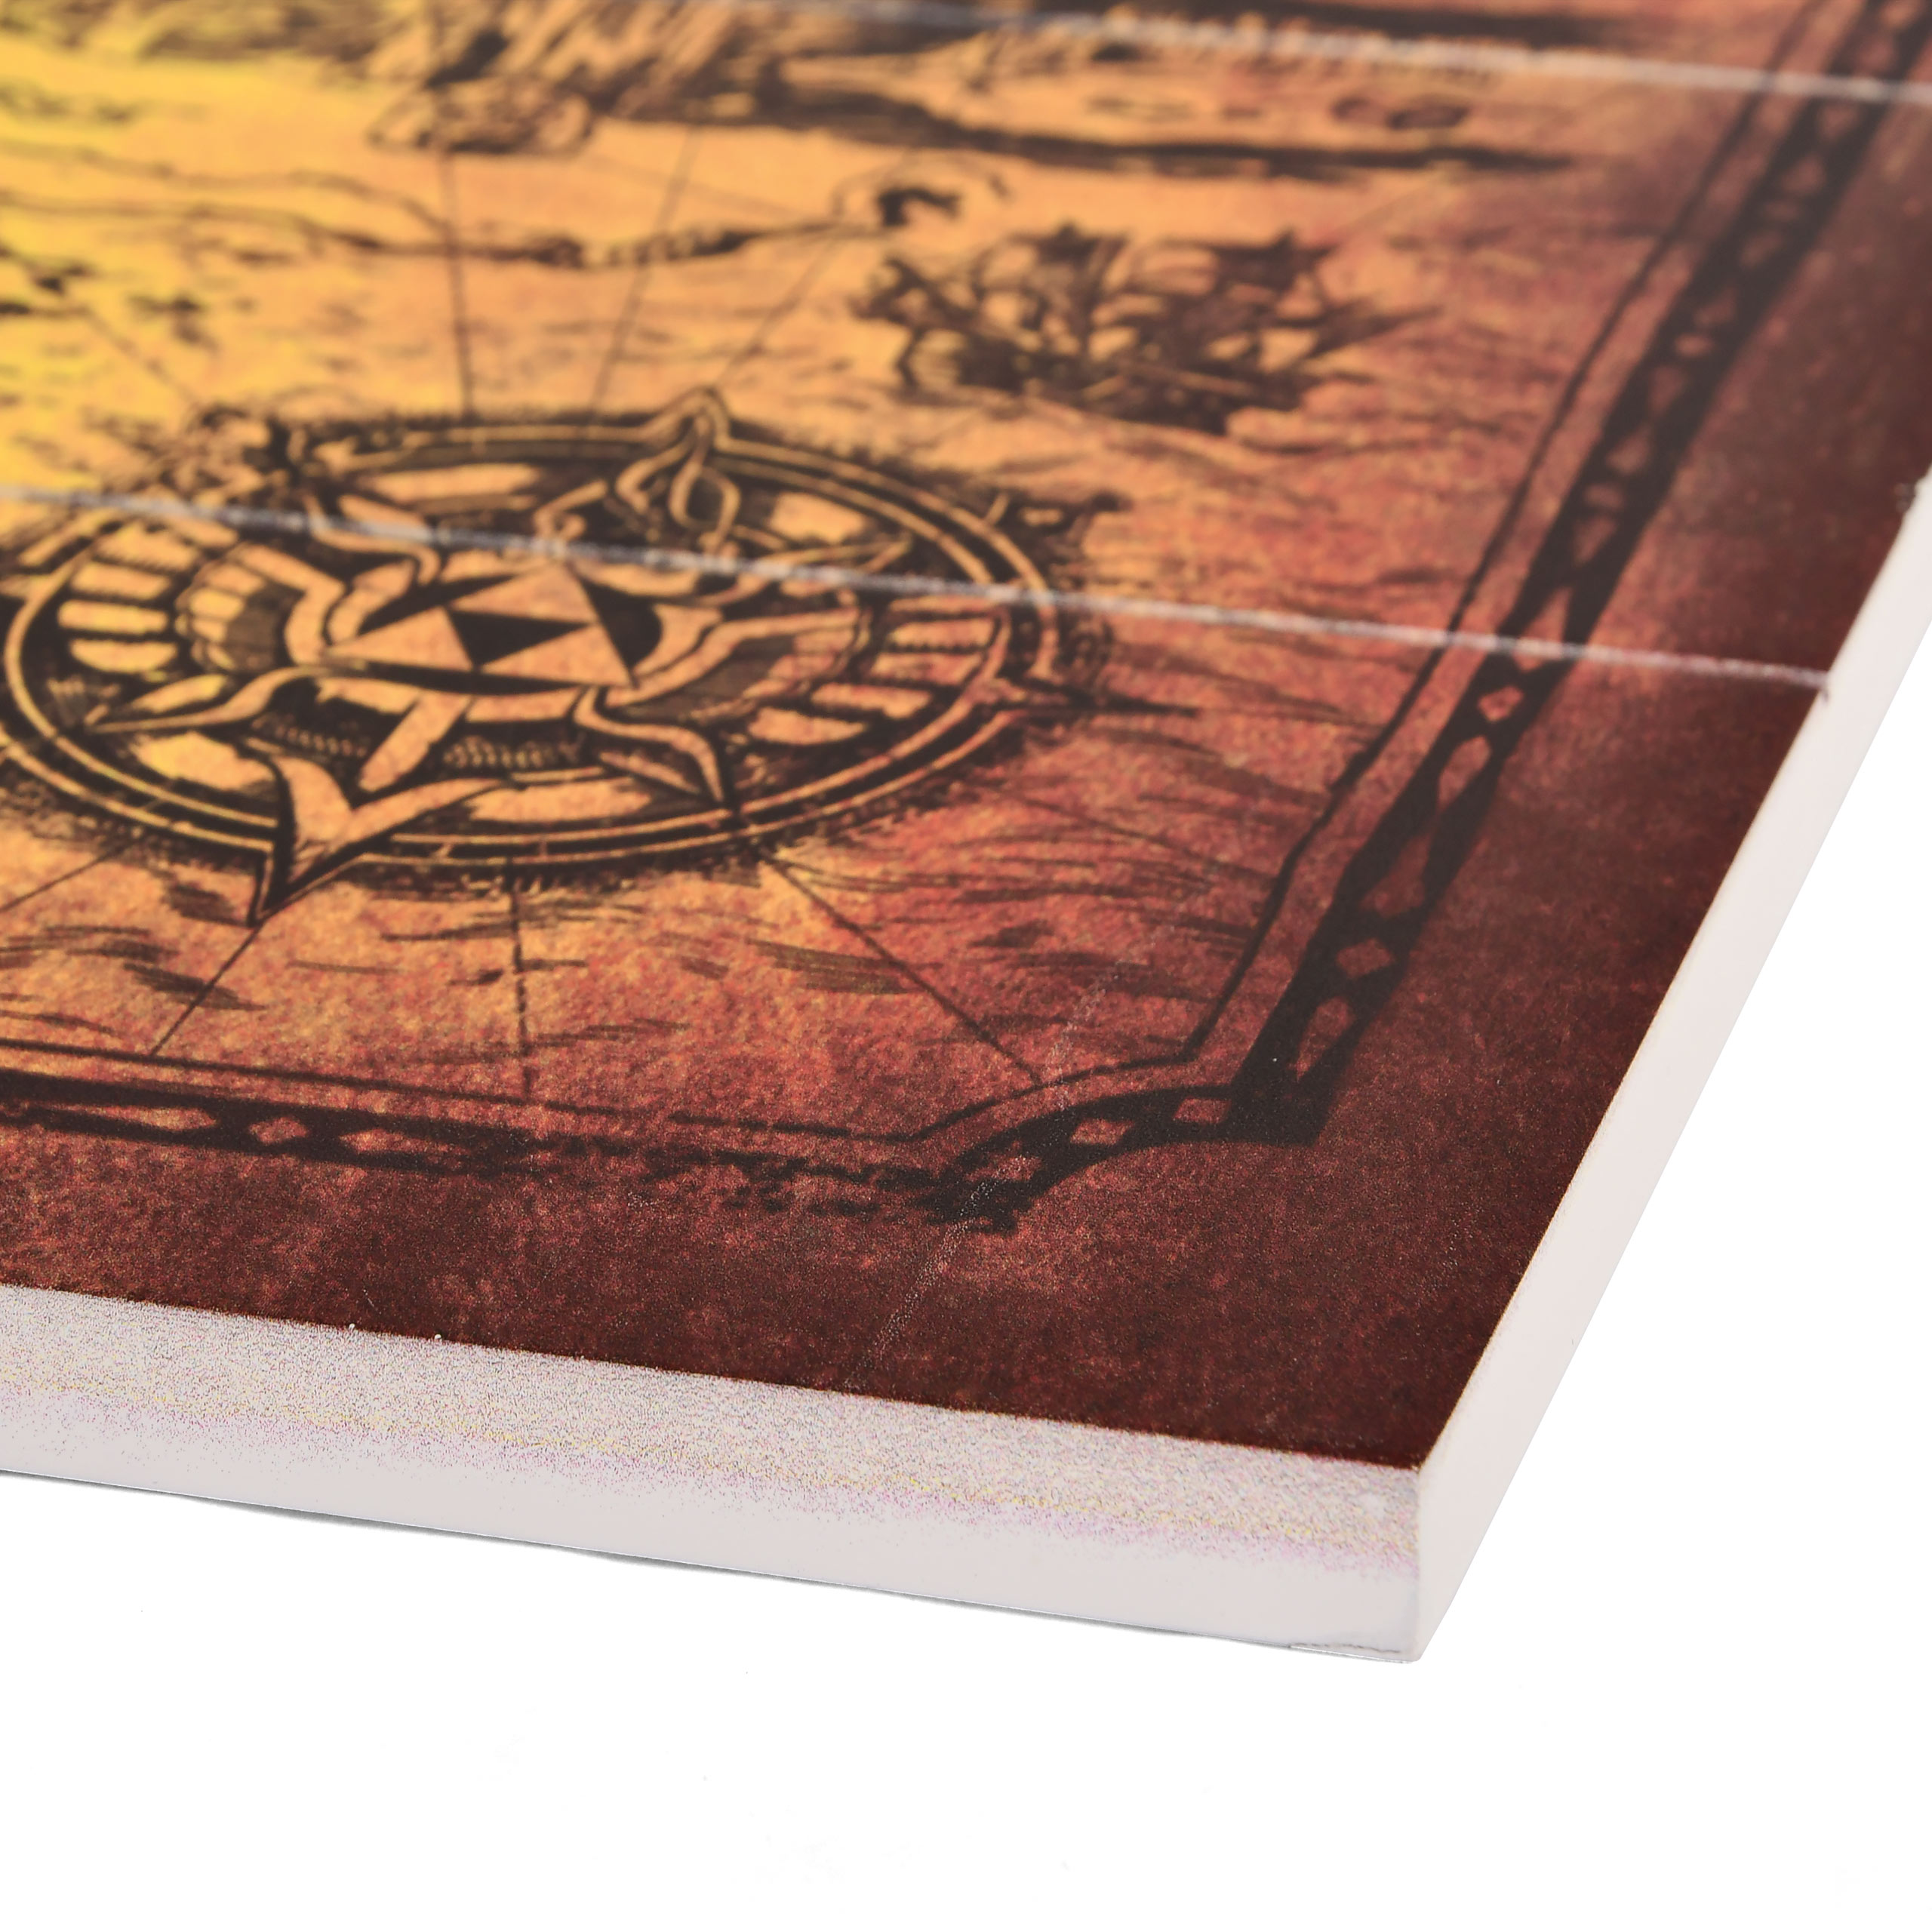 Zelda - Hyrule Map Wooden Wall Art